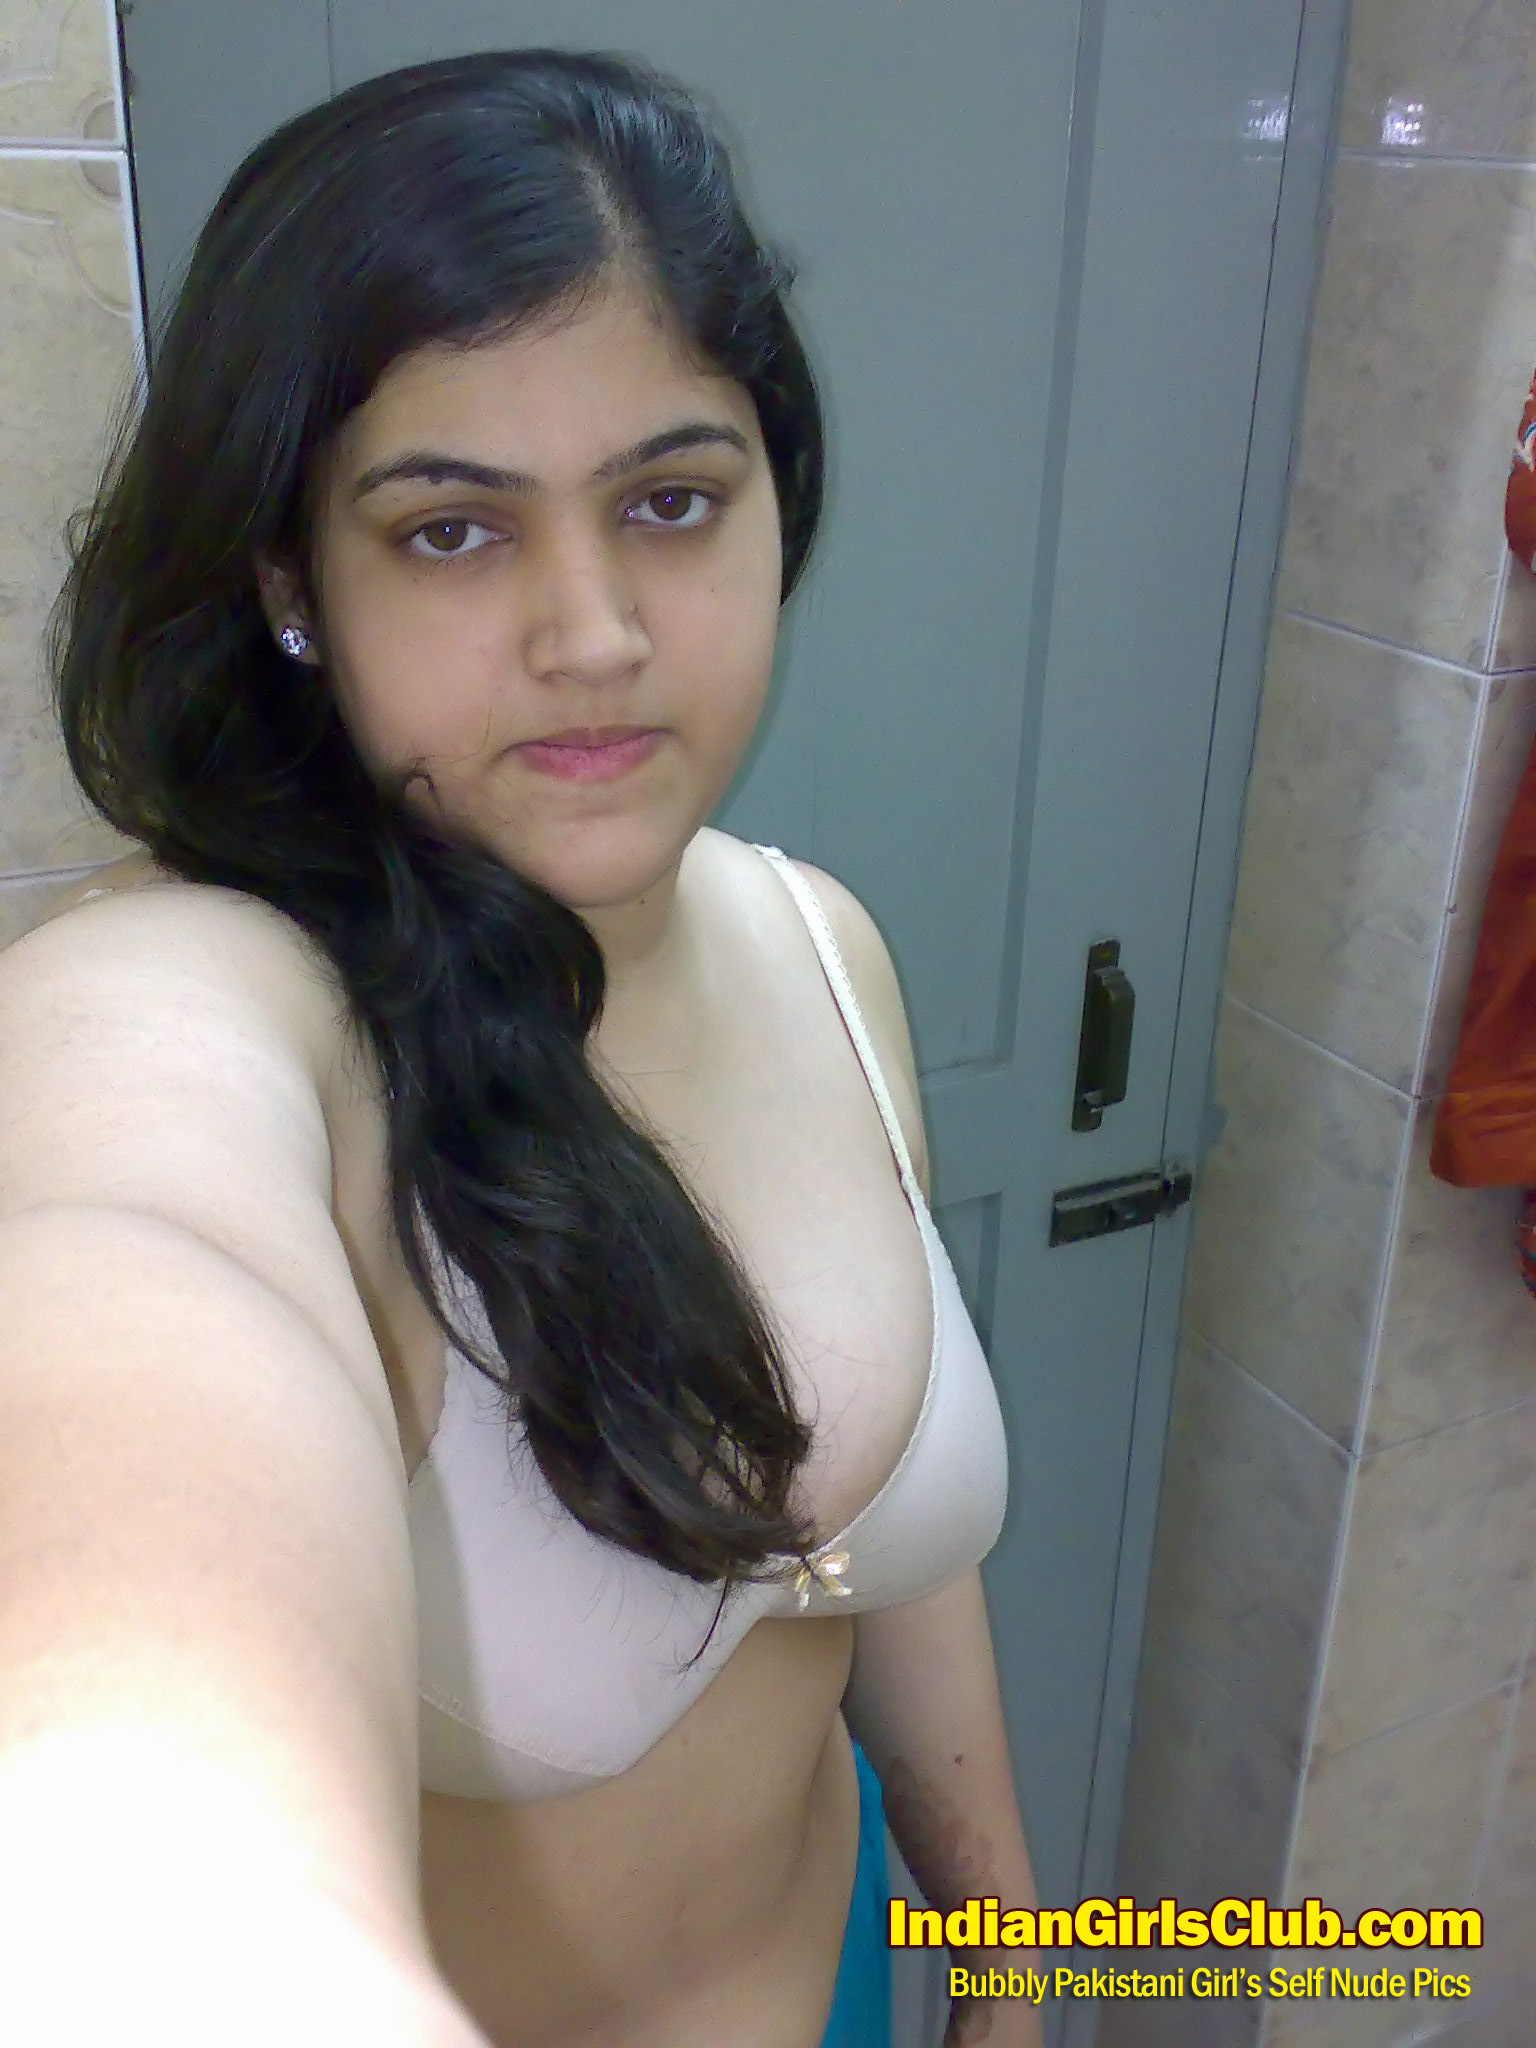 Pakistani Boobs Sex - pakistani girls tight boobs posing nude photos 8 - XXXPicz